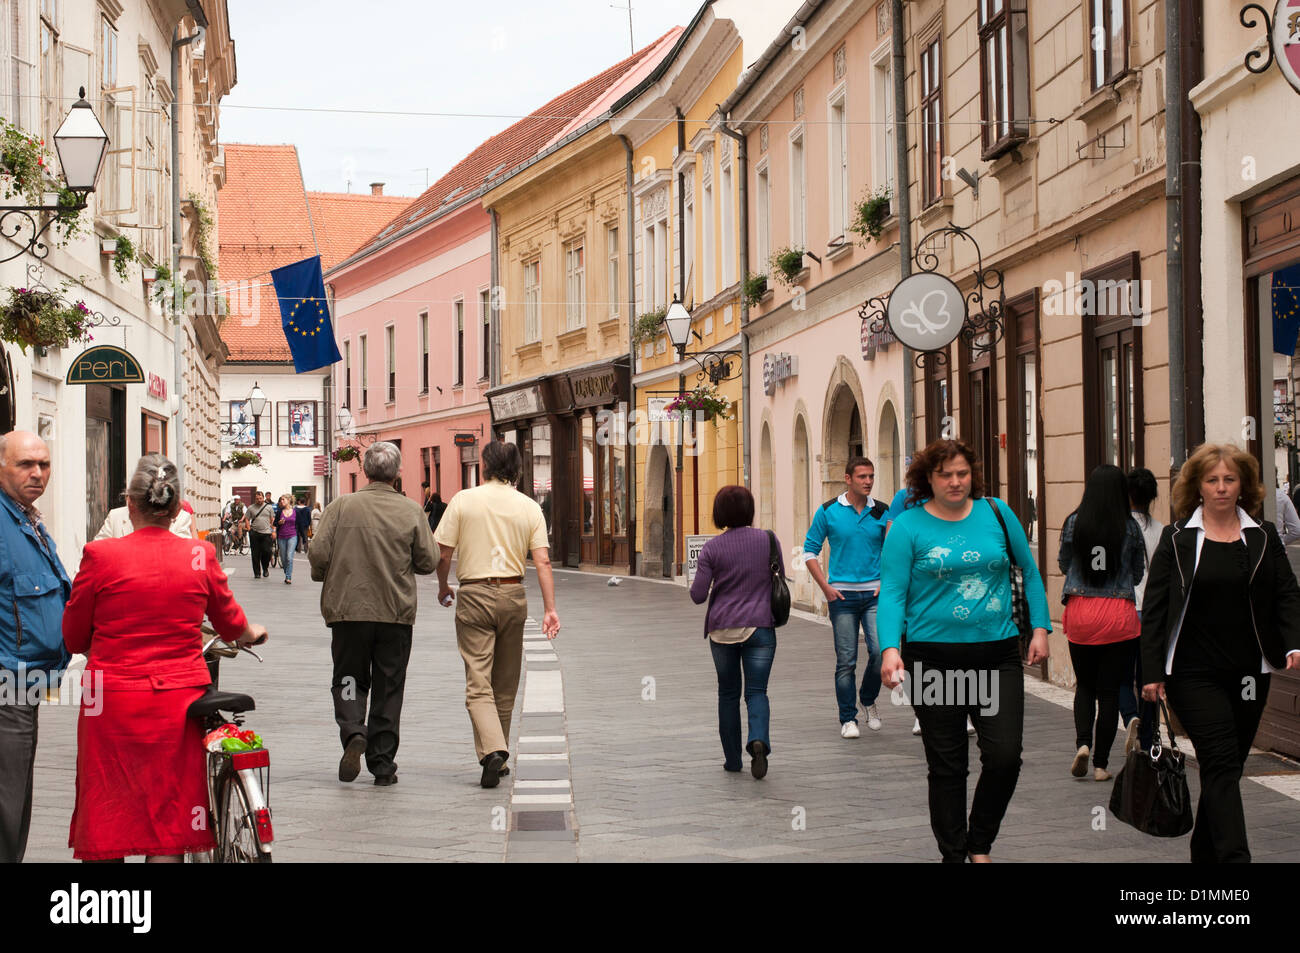 Street in the old city center of Varazdin Stock Photo